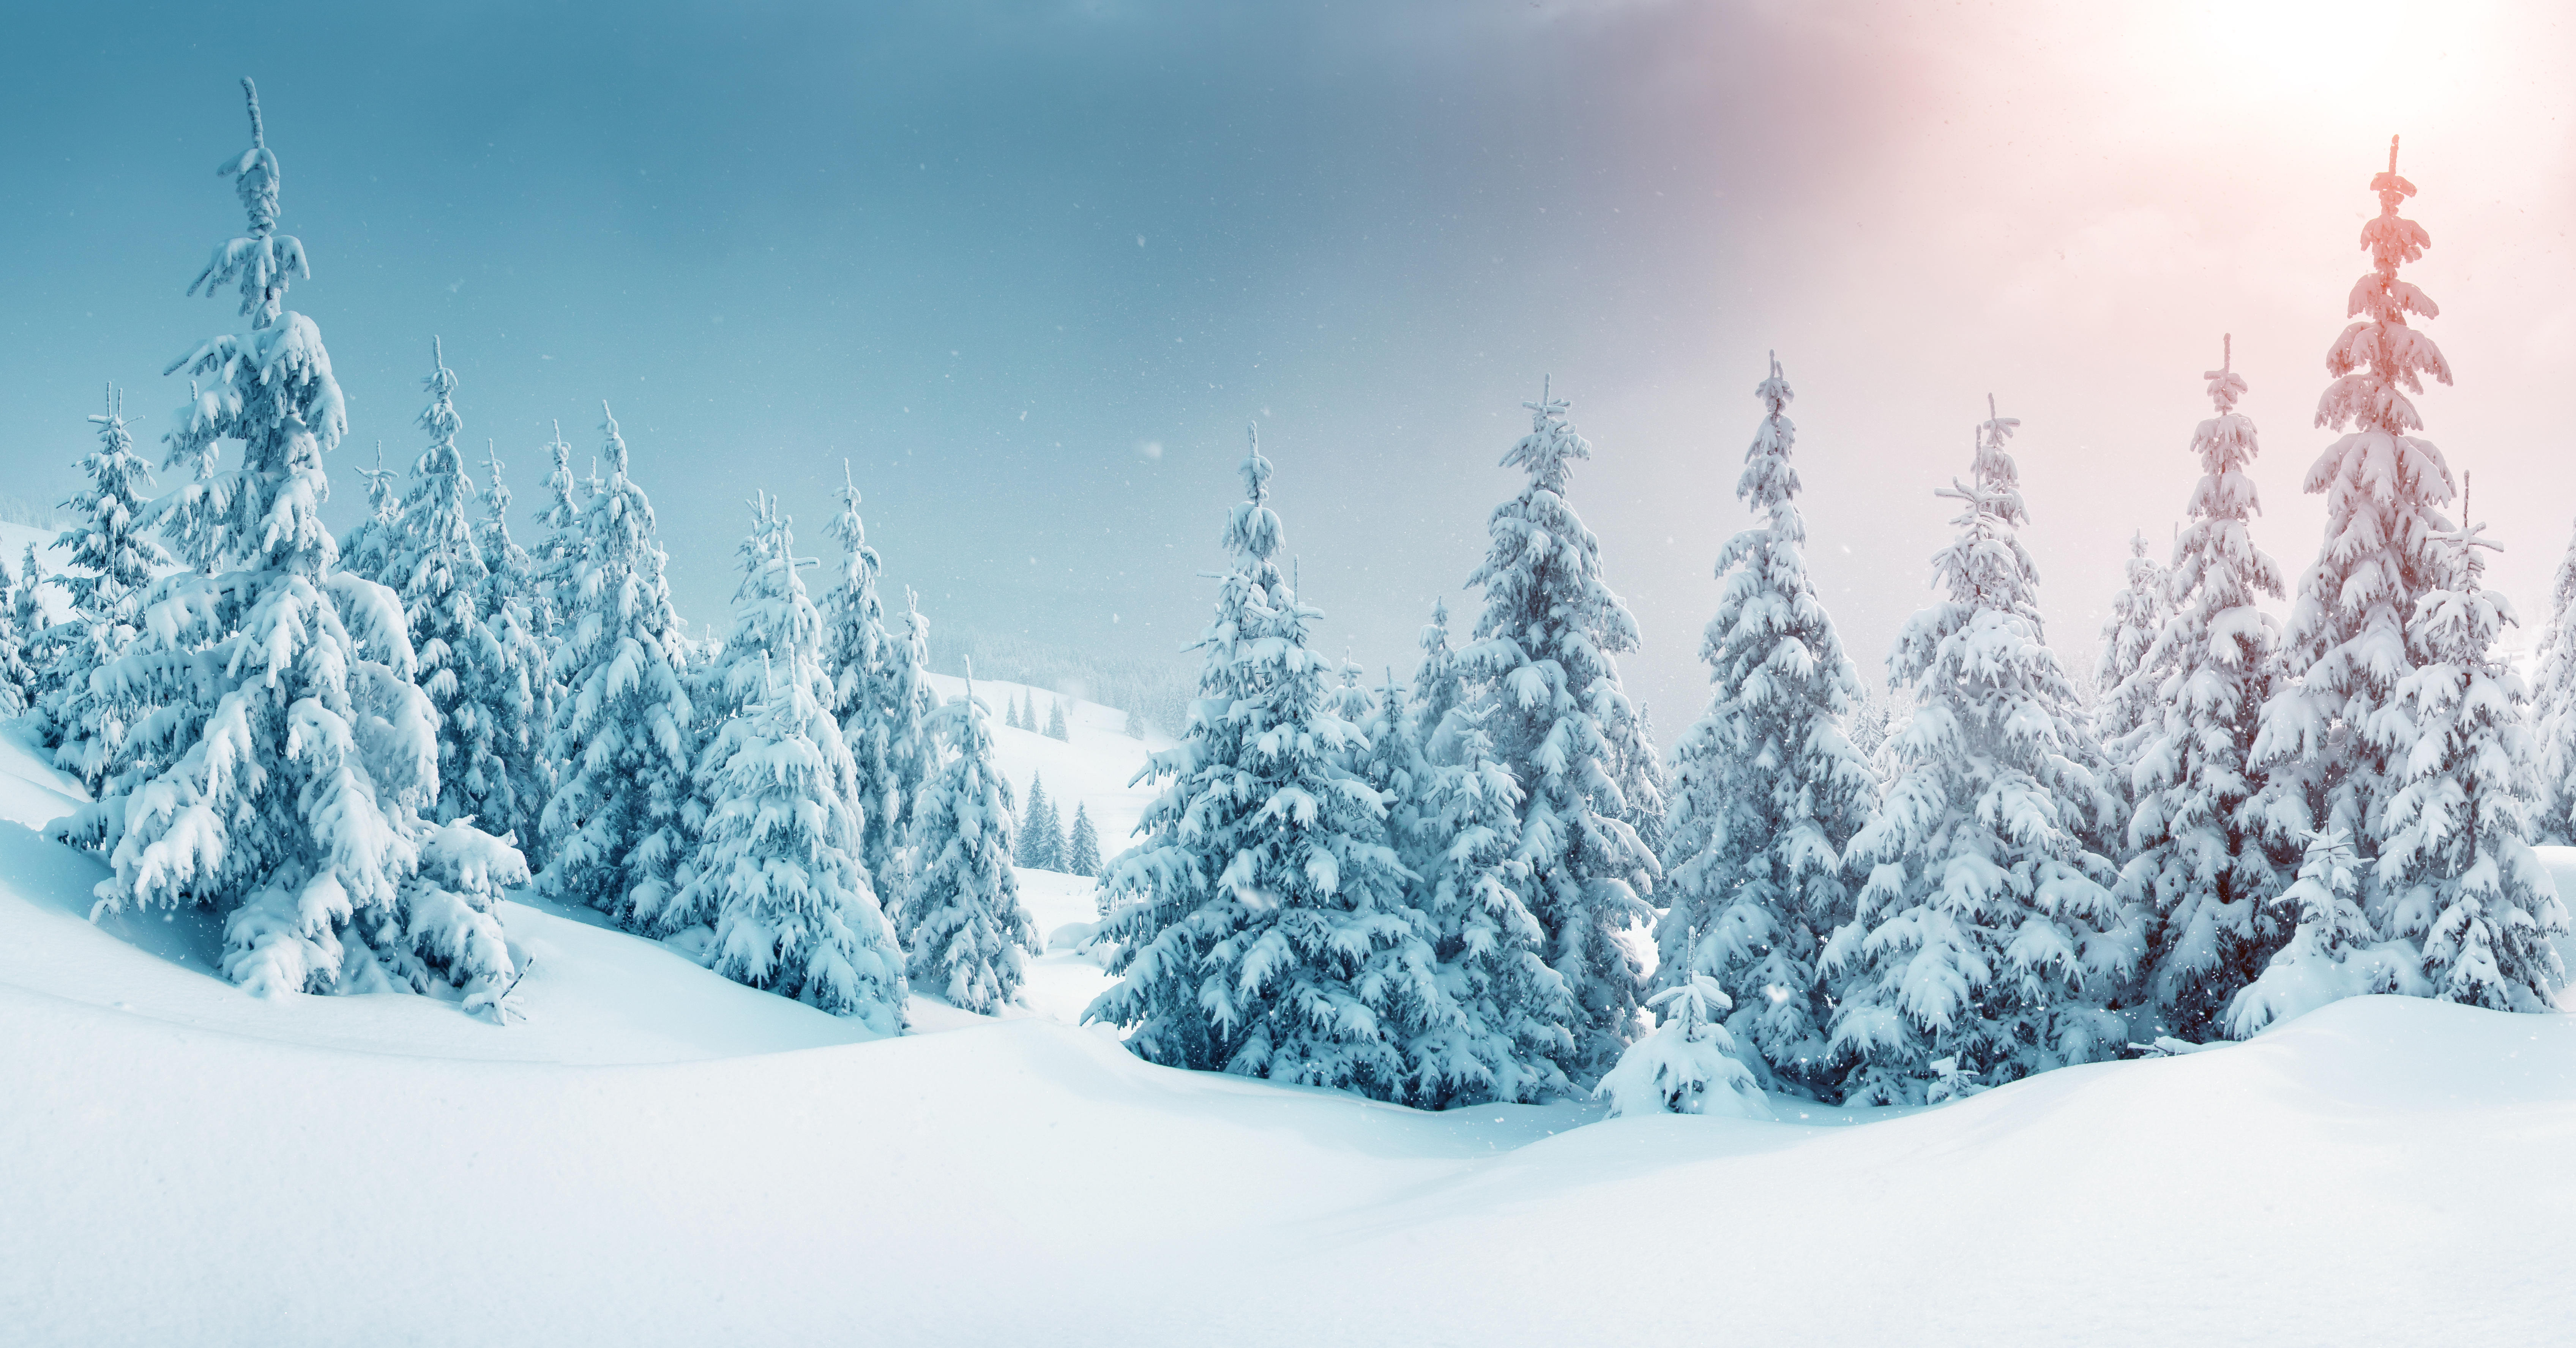 Фото снег на деревьях сугробы пейзажи - бесплатные картинки на Fonwall